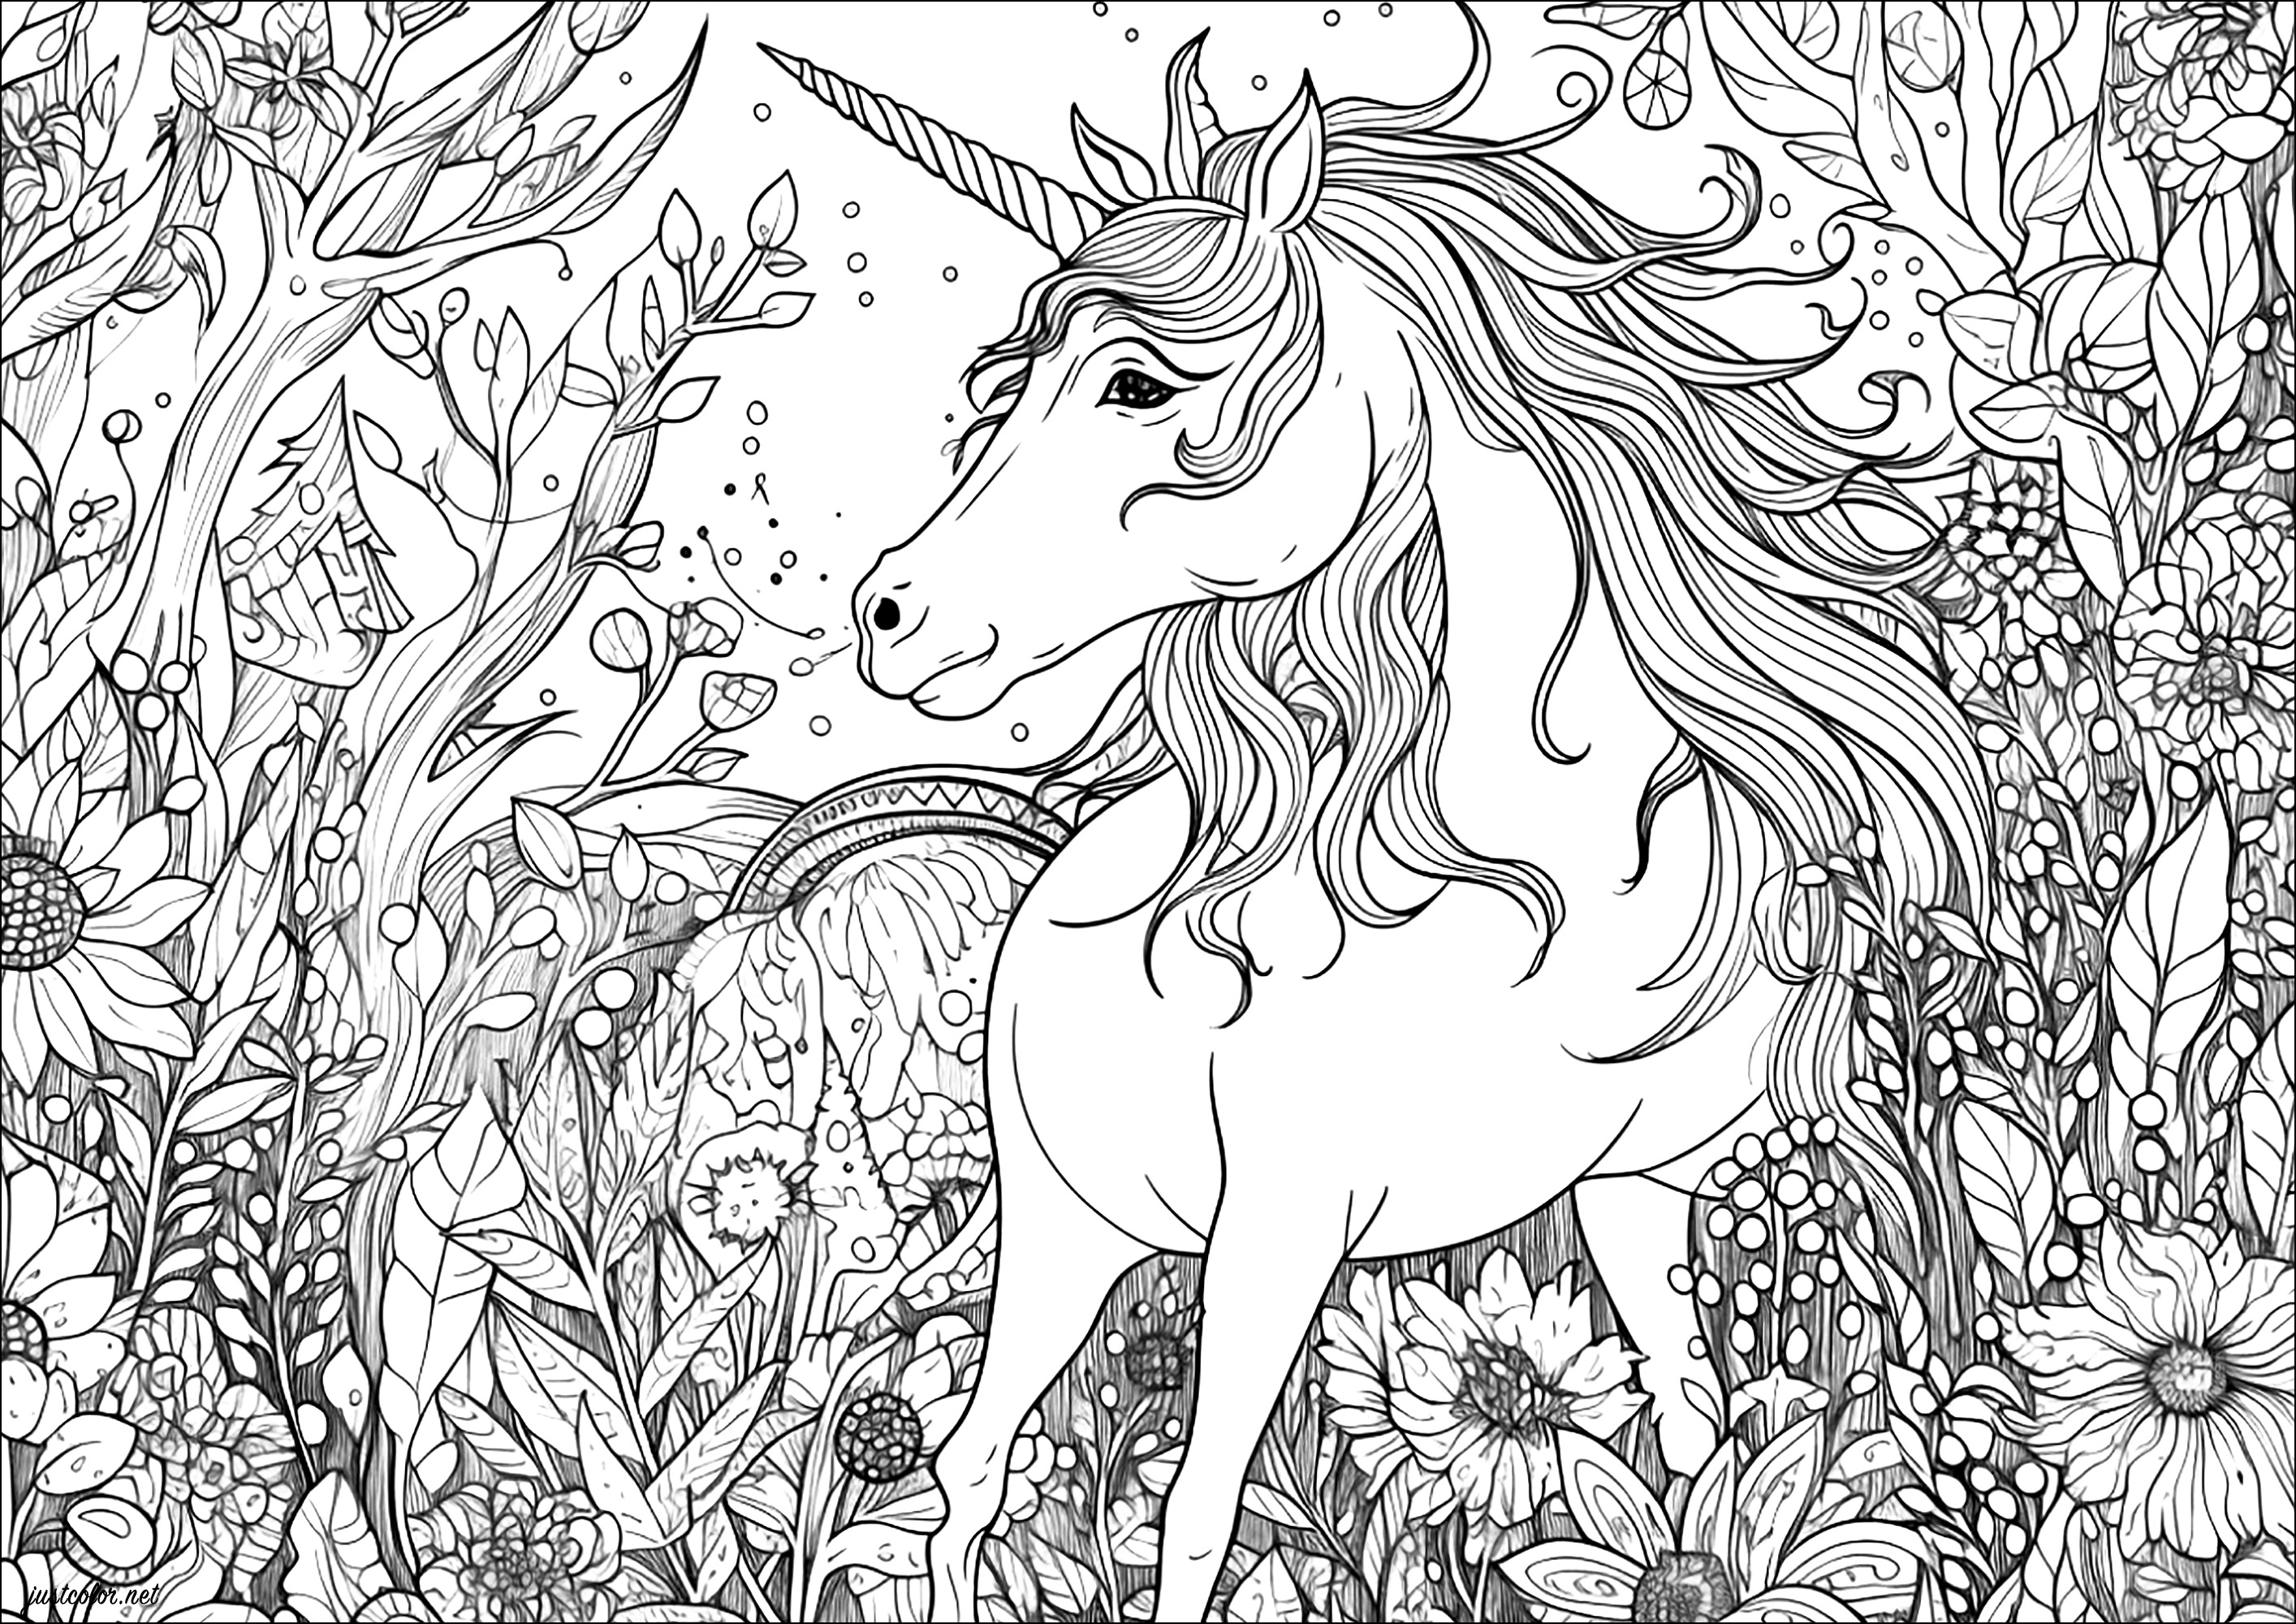 Grazioso unicorno in una foresta. Tanti dettagli da colorare, per una magica esperienza di colorazione